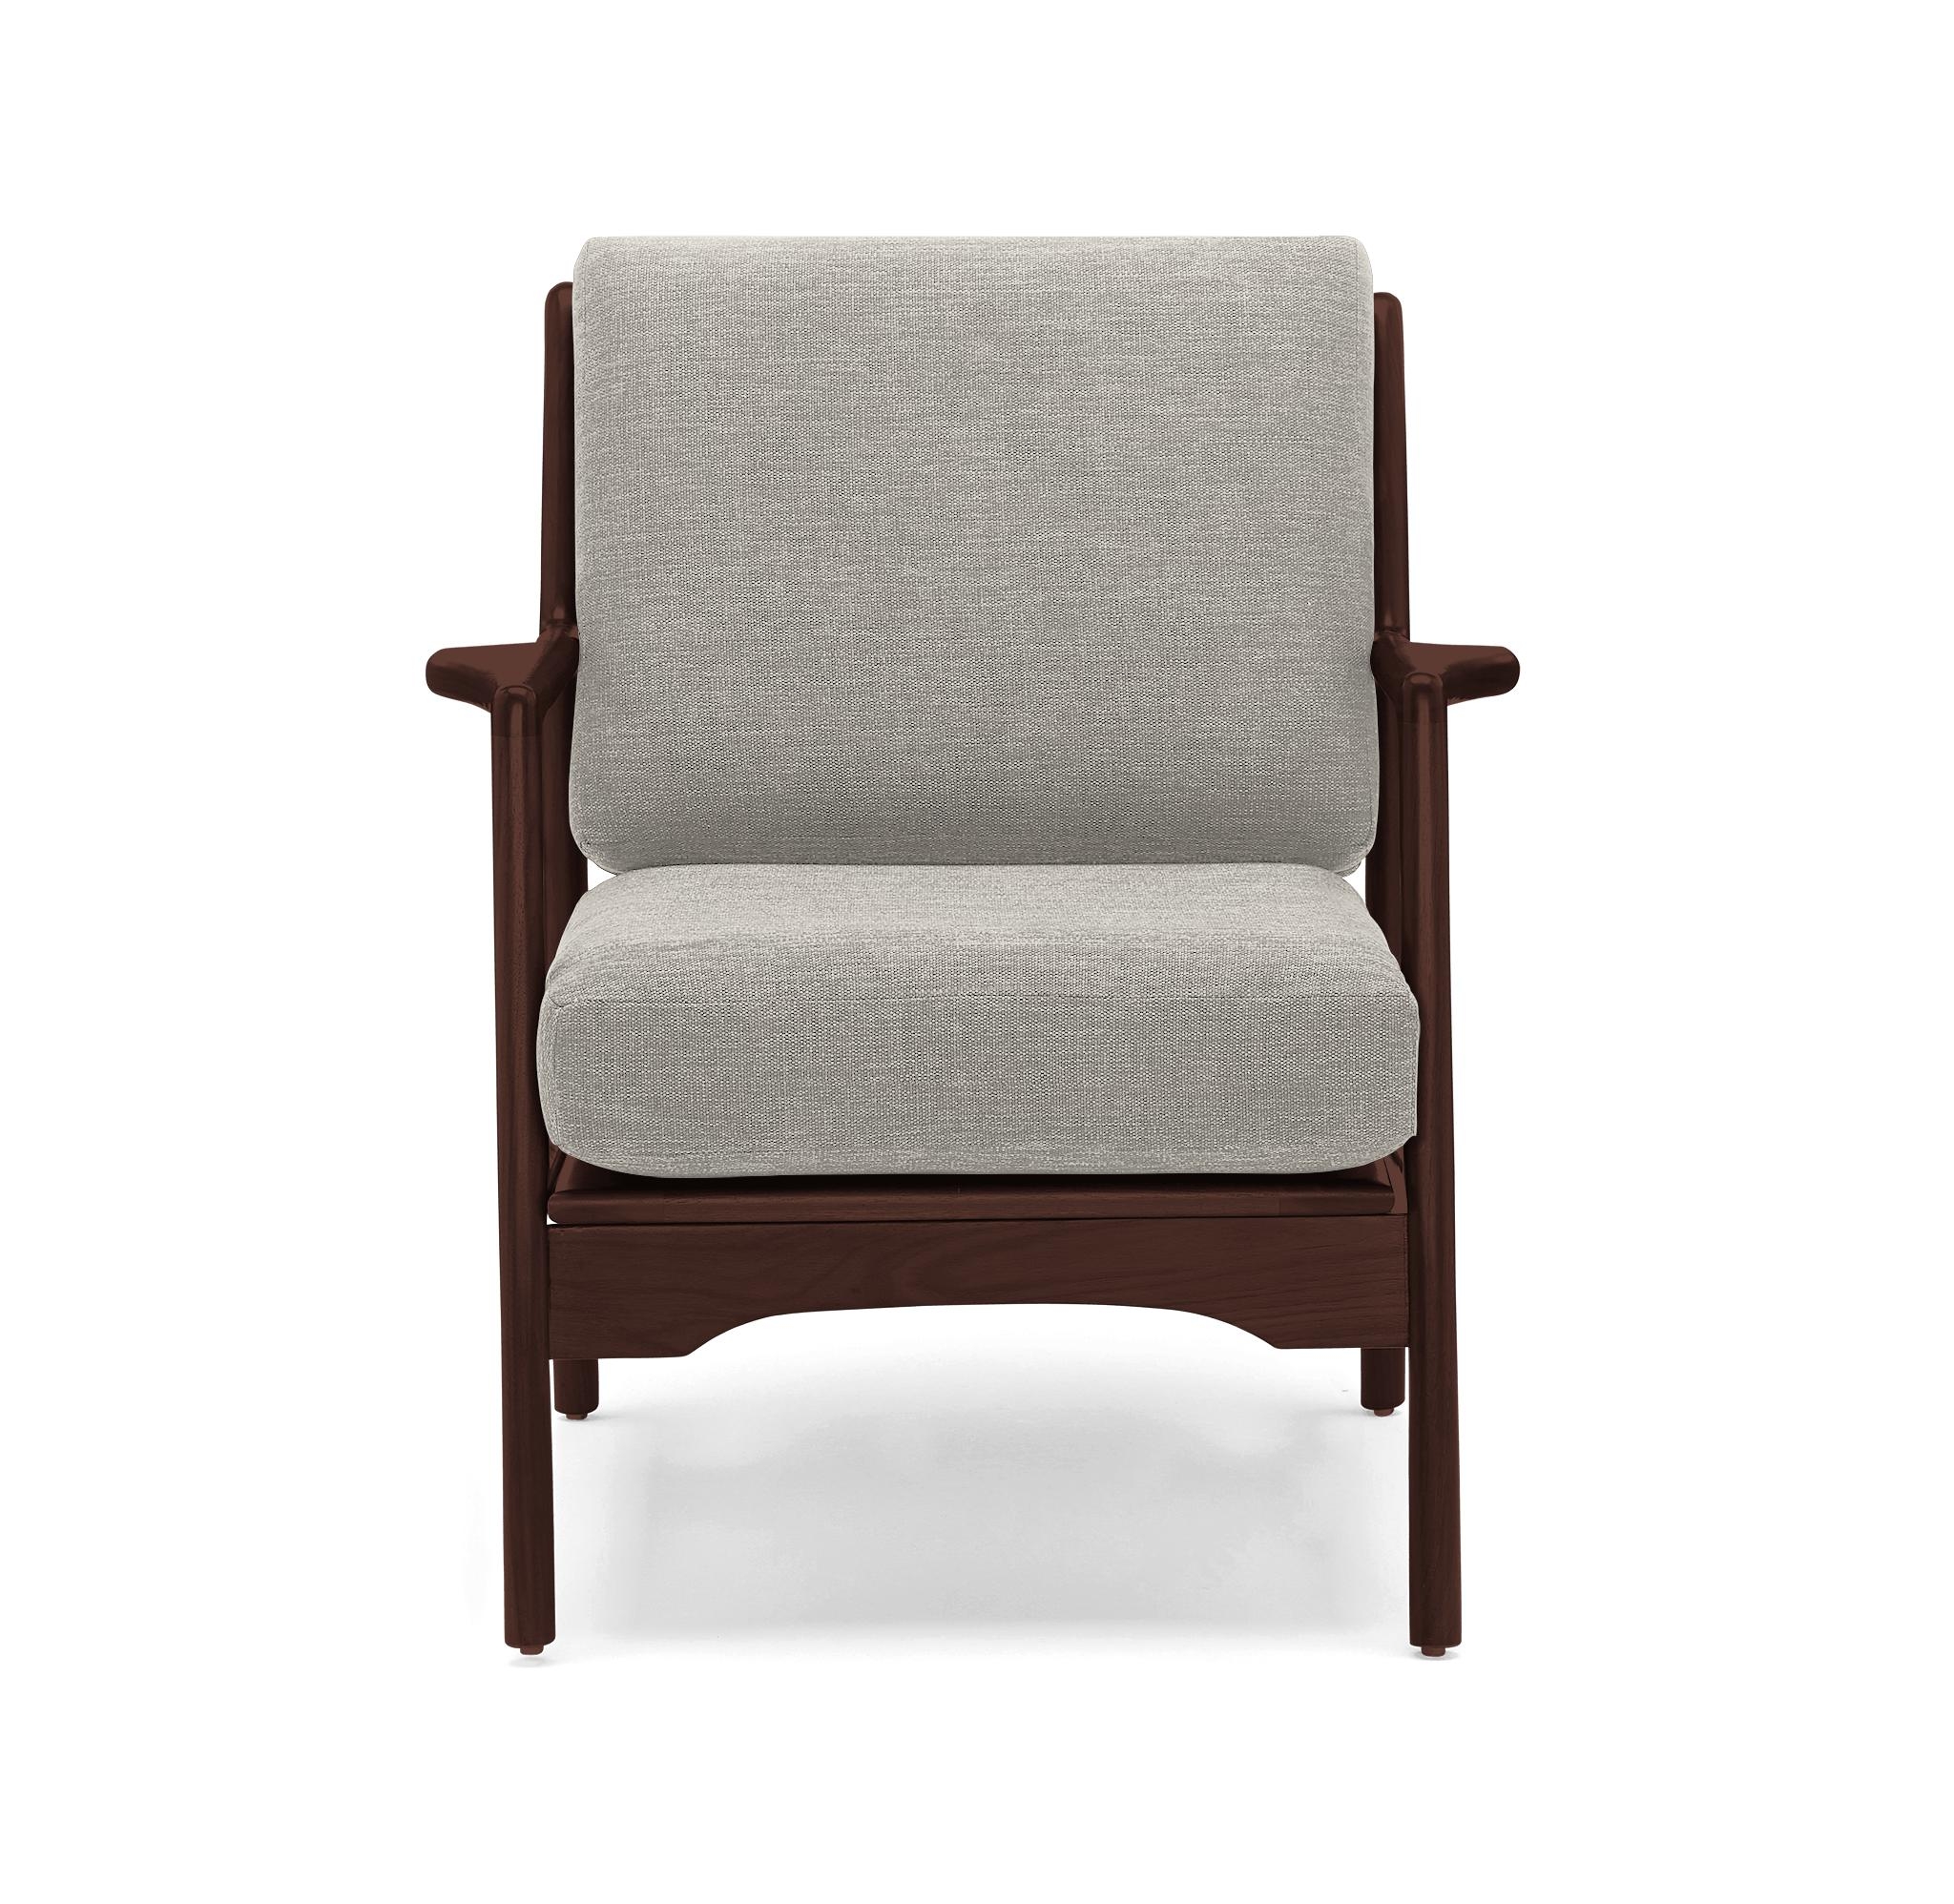 White Collins Mid Century Modern Chair - Bloke Cotton - Walnut - Image 0